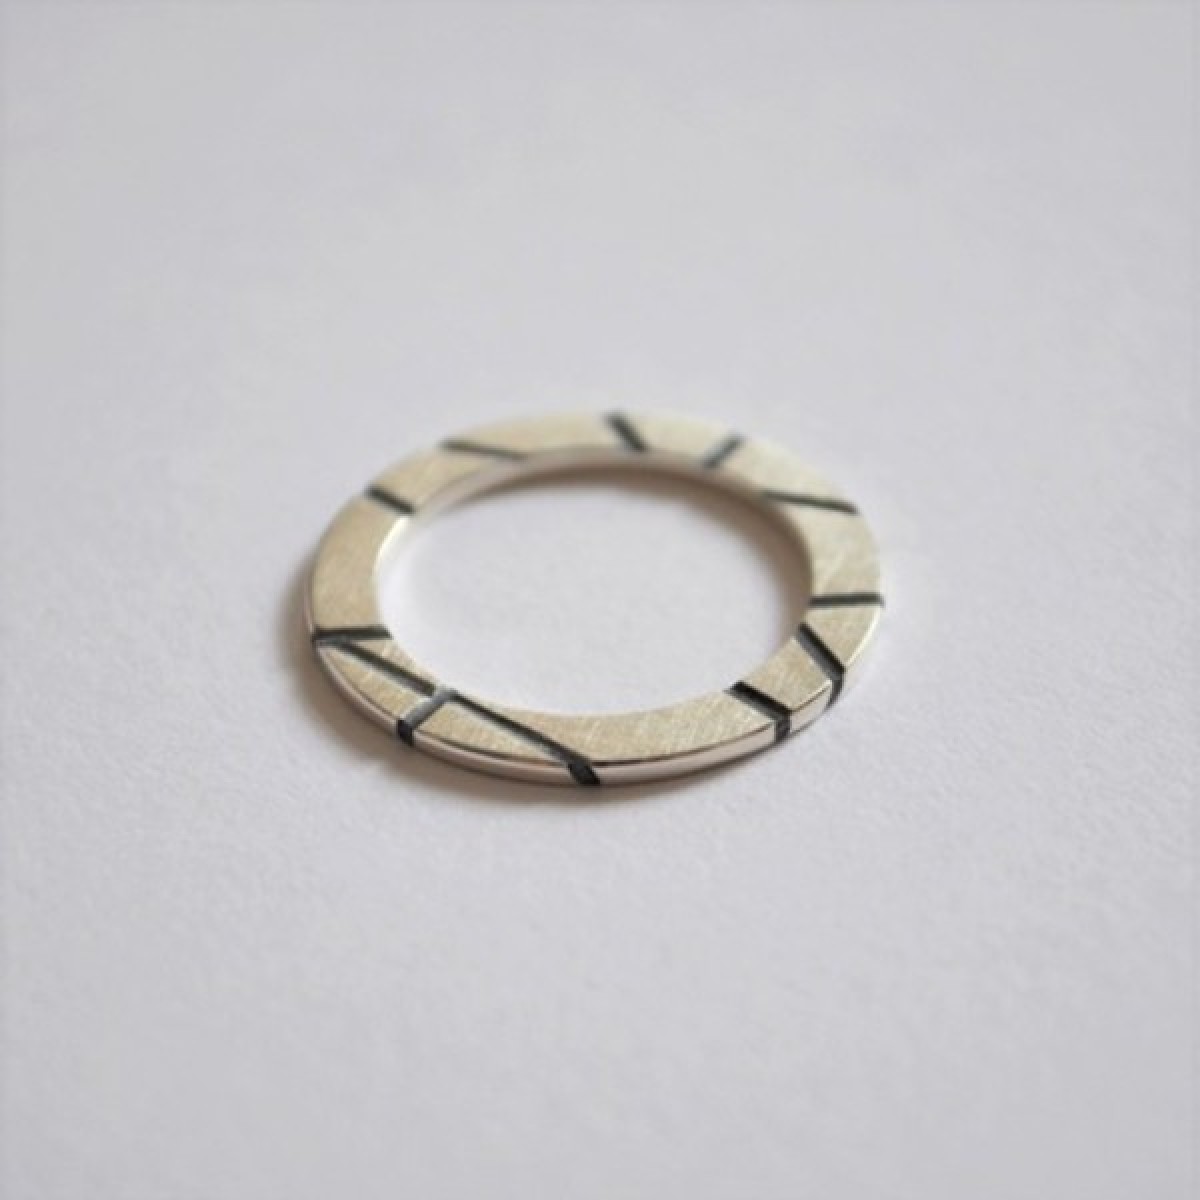 Ring "Vertieft" aus 925/- Silber von Doppelludwig